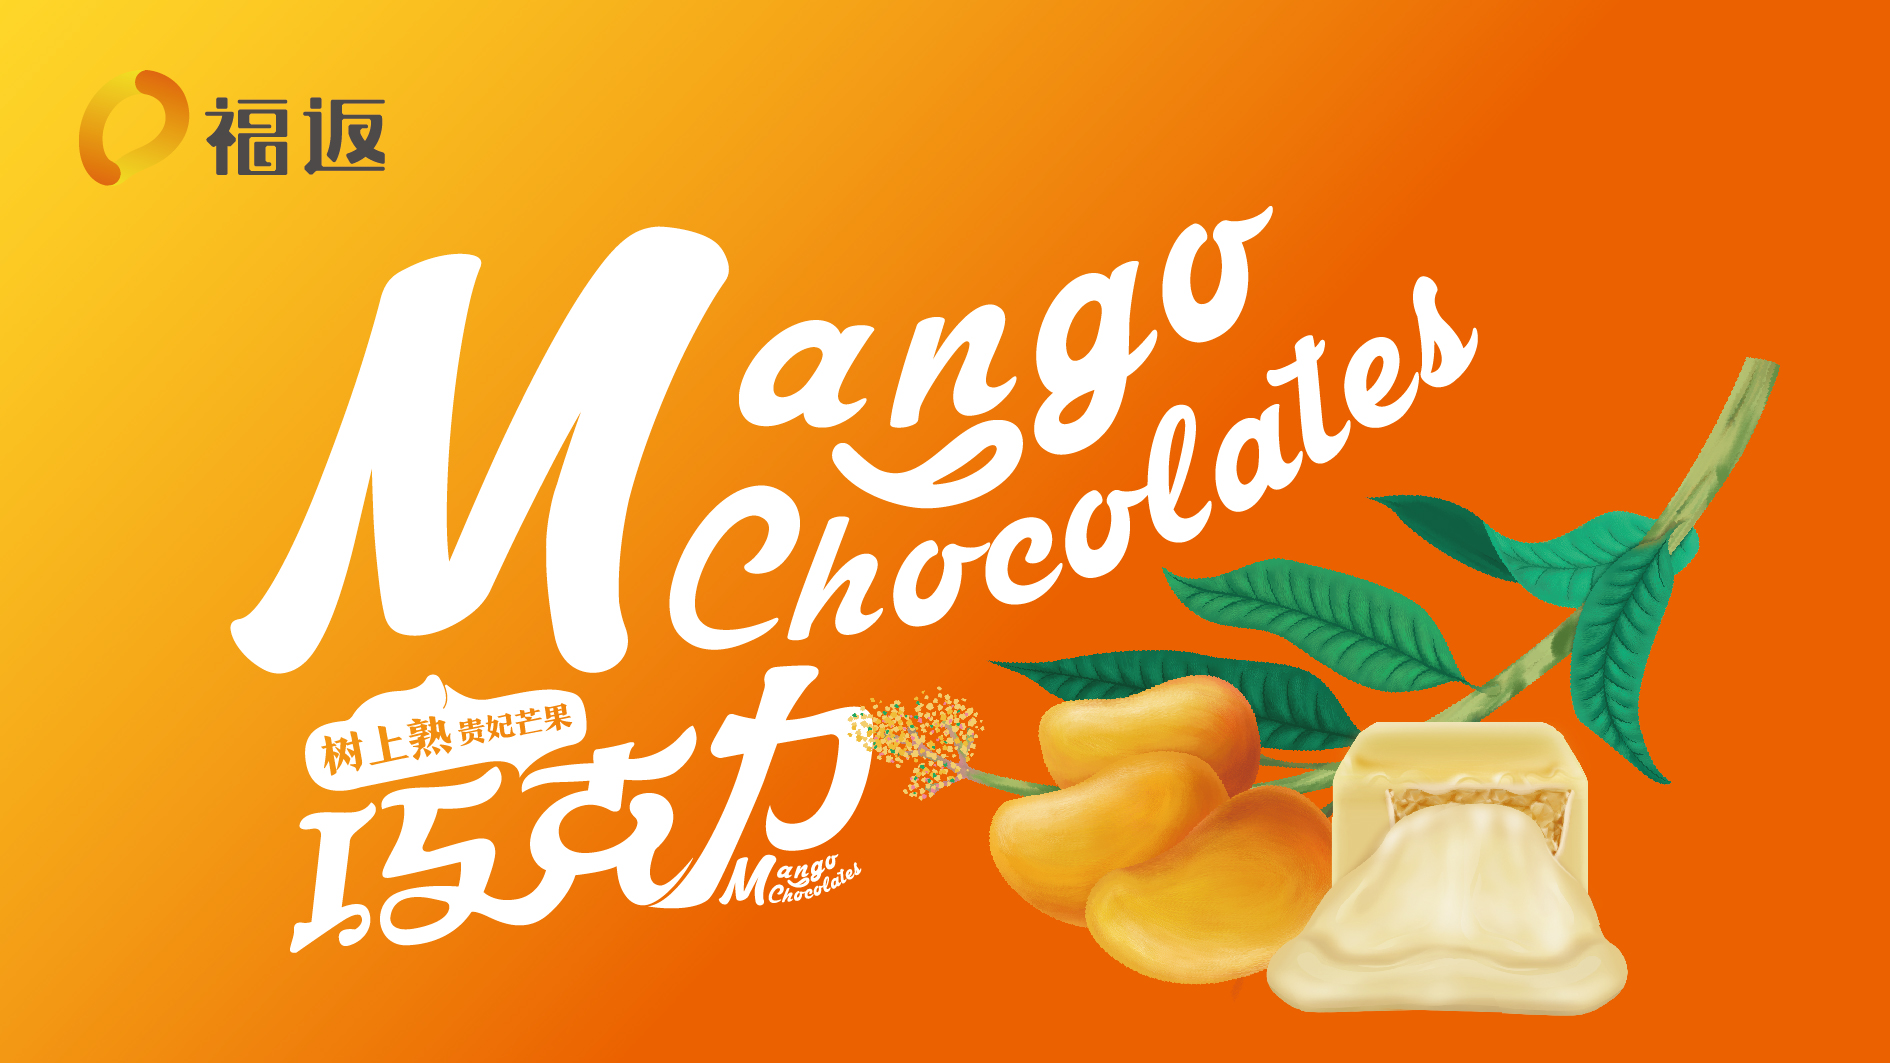 广东福返芒果巧克力品牌形象设计